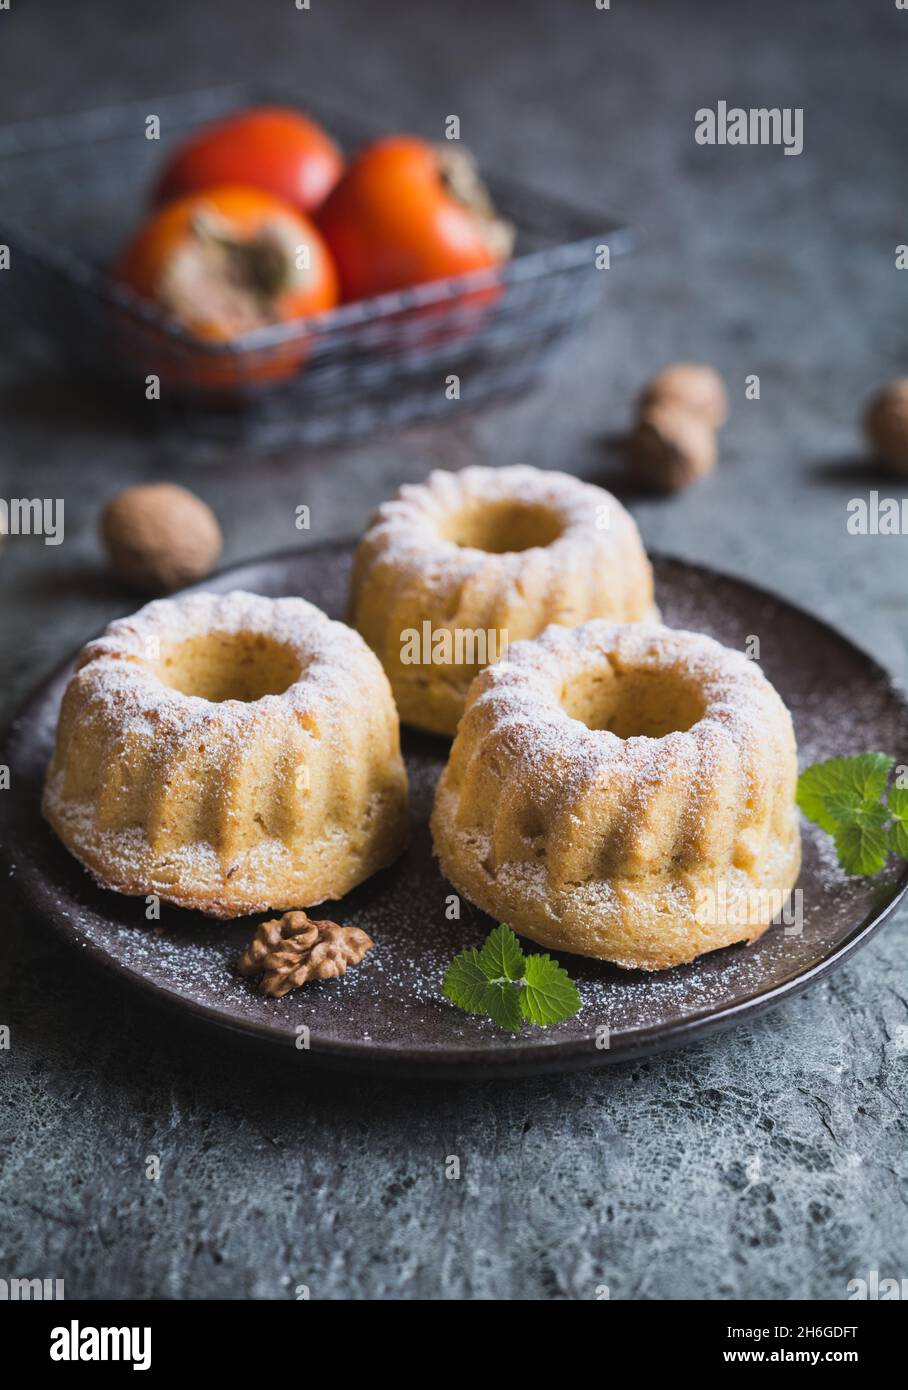 Petits gâteaux de kaki et de noix parsemés de sucre en poudre Banque D'Images